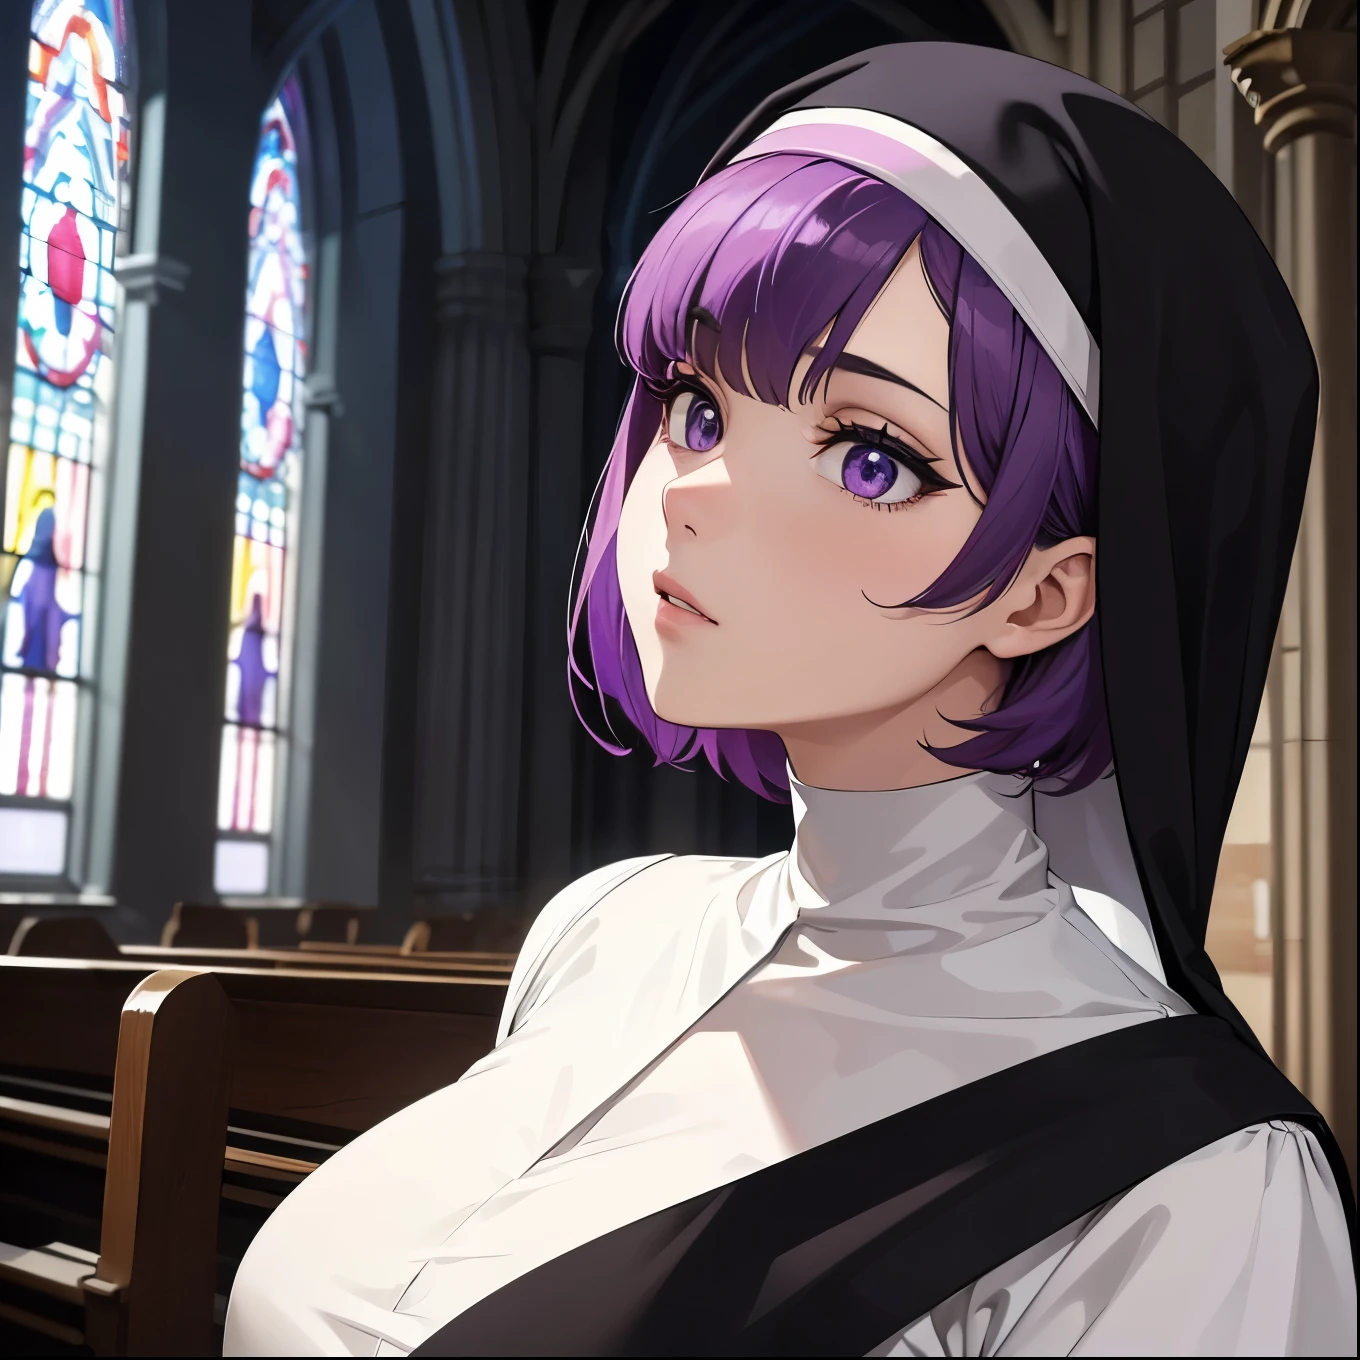 高級, 傑作, 超高解析度, 一個紫色短髮和紫色眼睛的女孩的照片，她穿著修女在教堂裡&#39;服裝, 她仰躺著，展示她的大屁股 